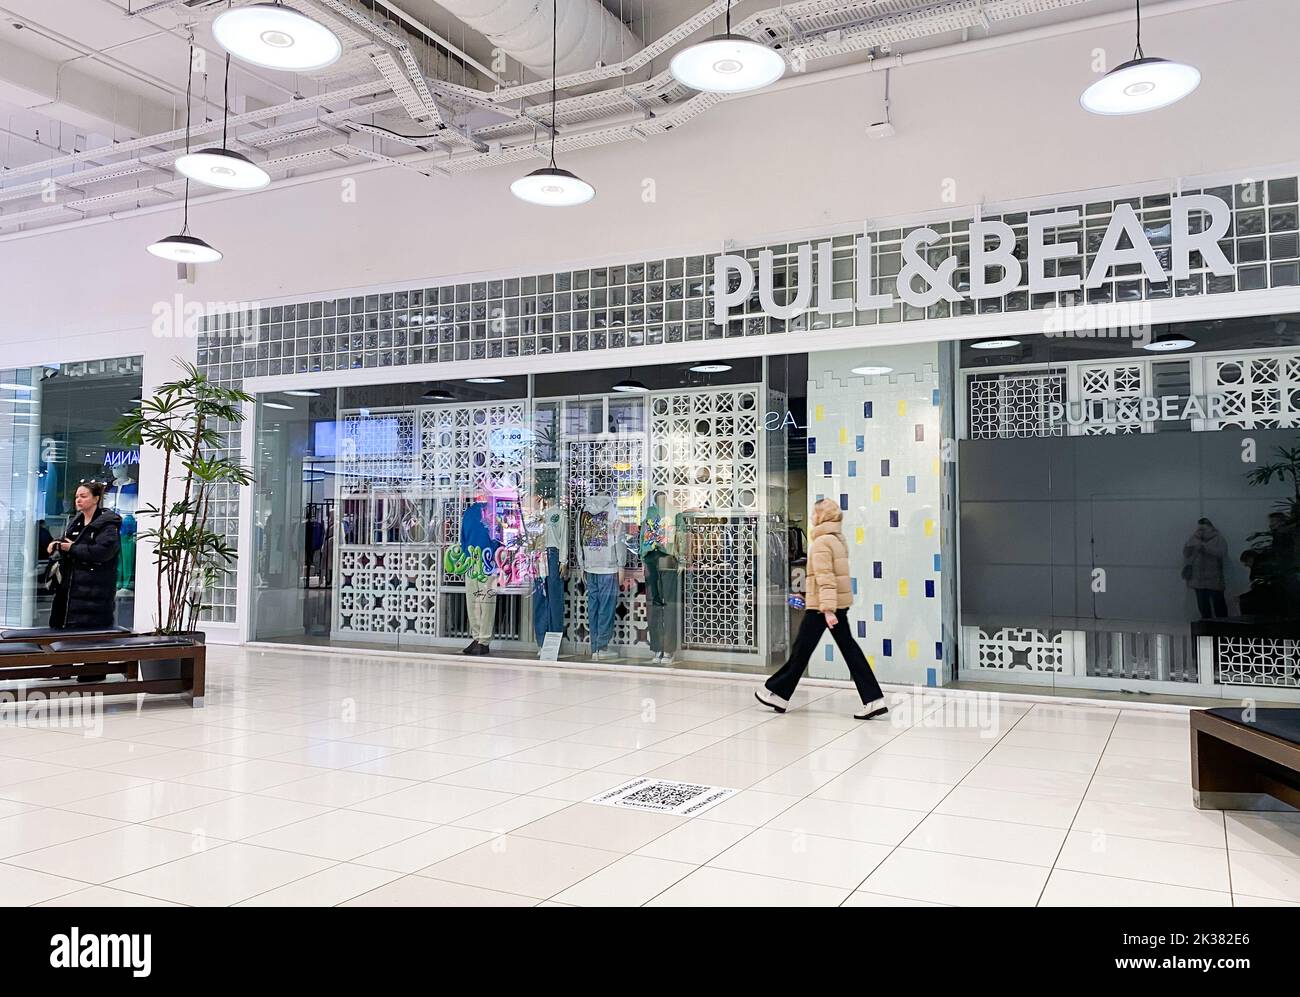 Mosca, Russia, marzo 2022: Il negozio Pull and Bear sospende il lavoro in Russia. I negozi di marca nel centro commerciale sono chiusi. Foto Stock